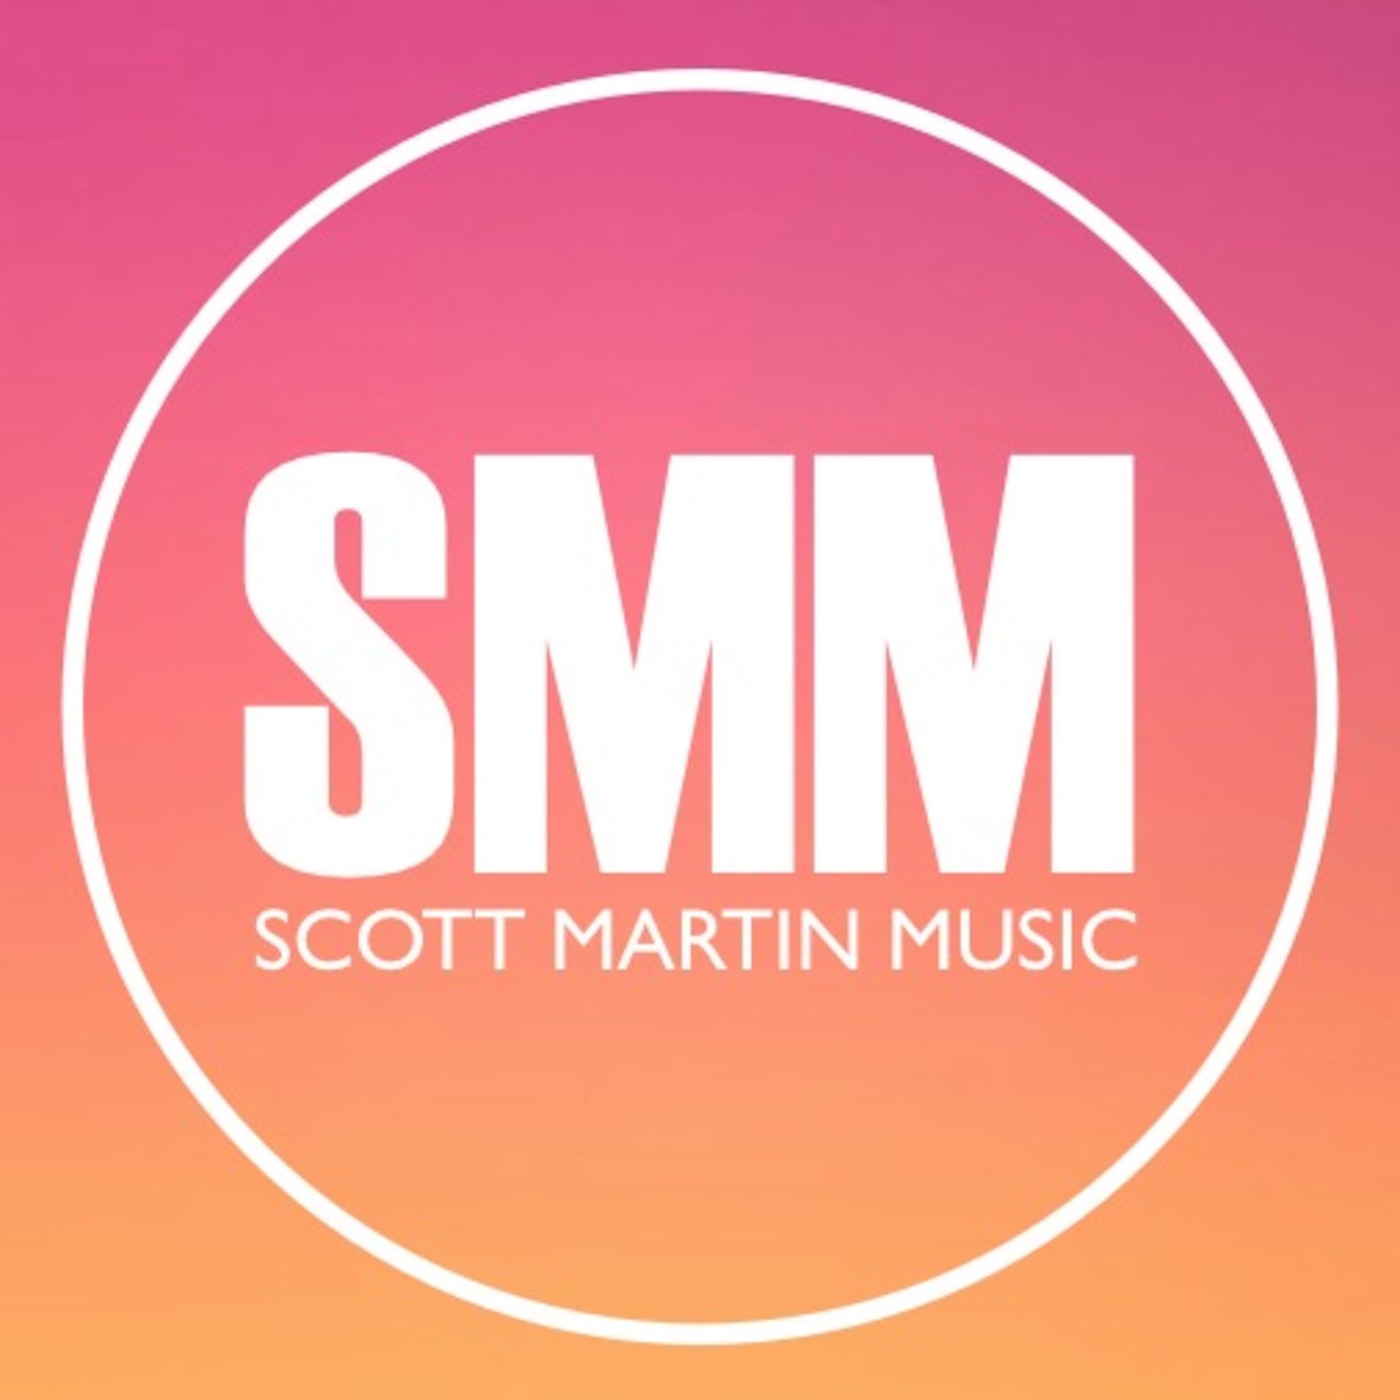 Scott Martin Music